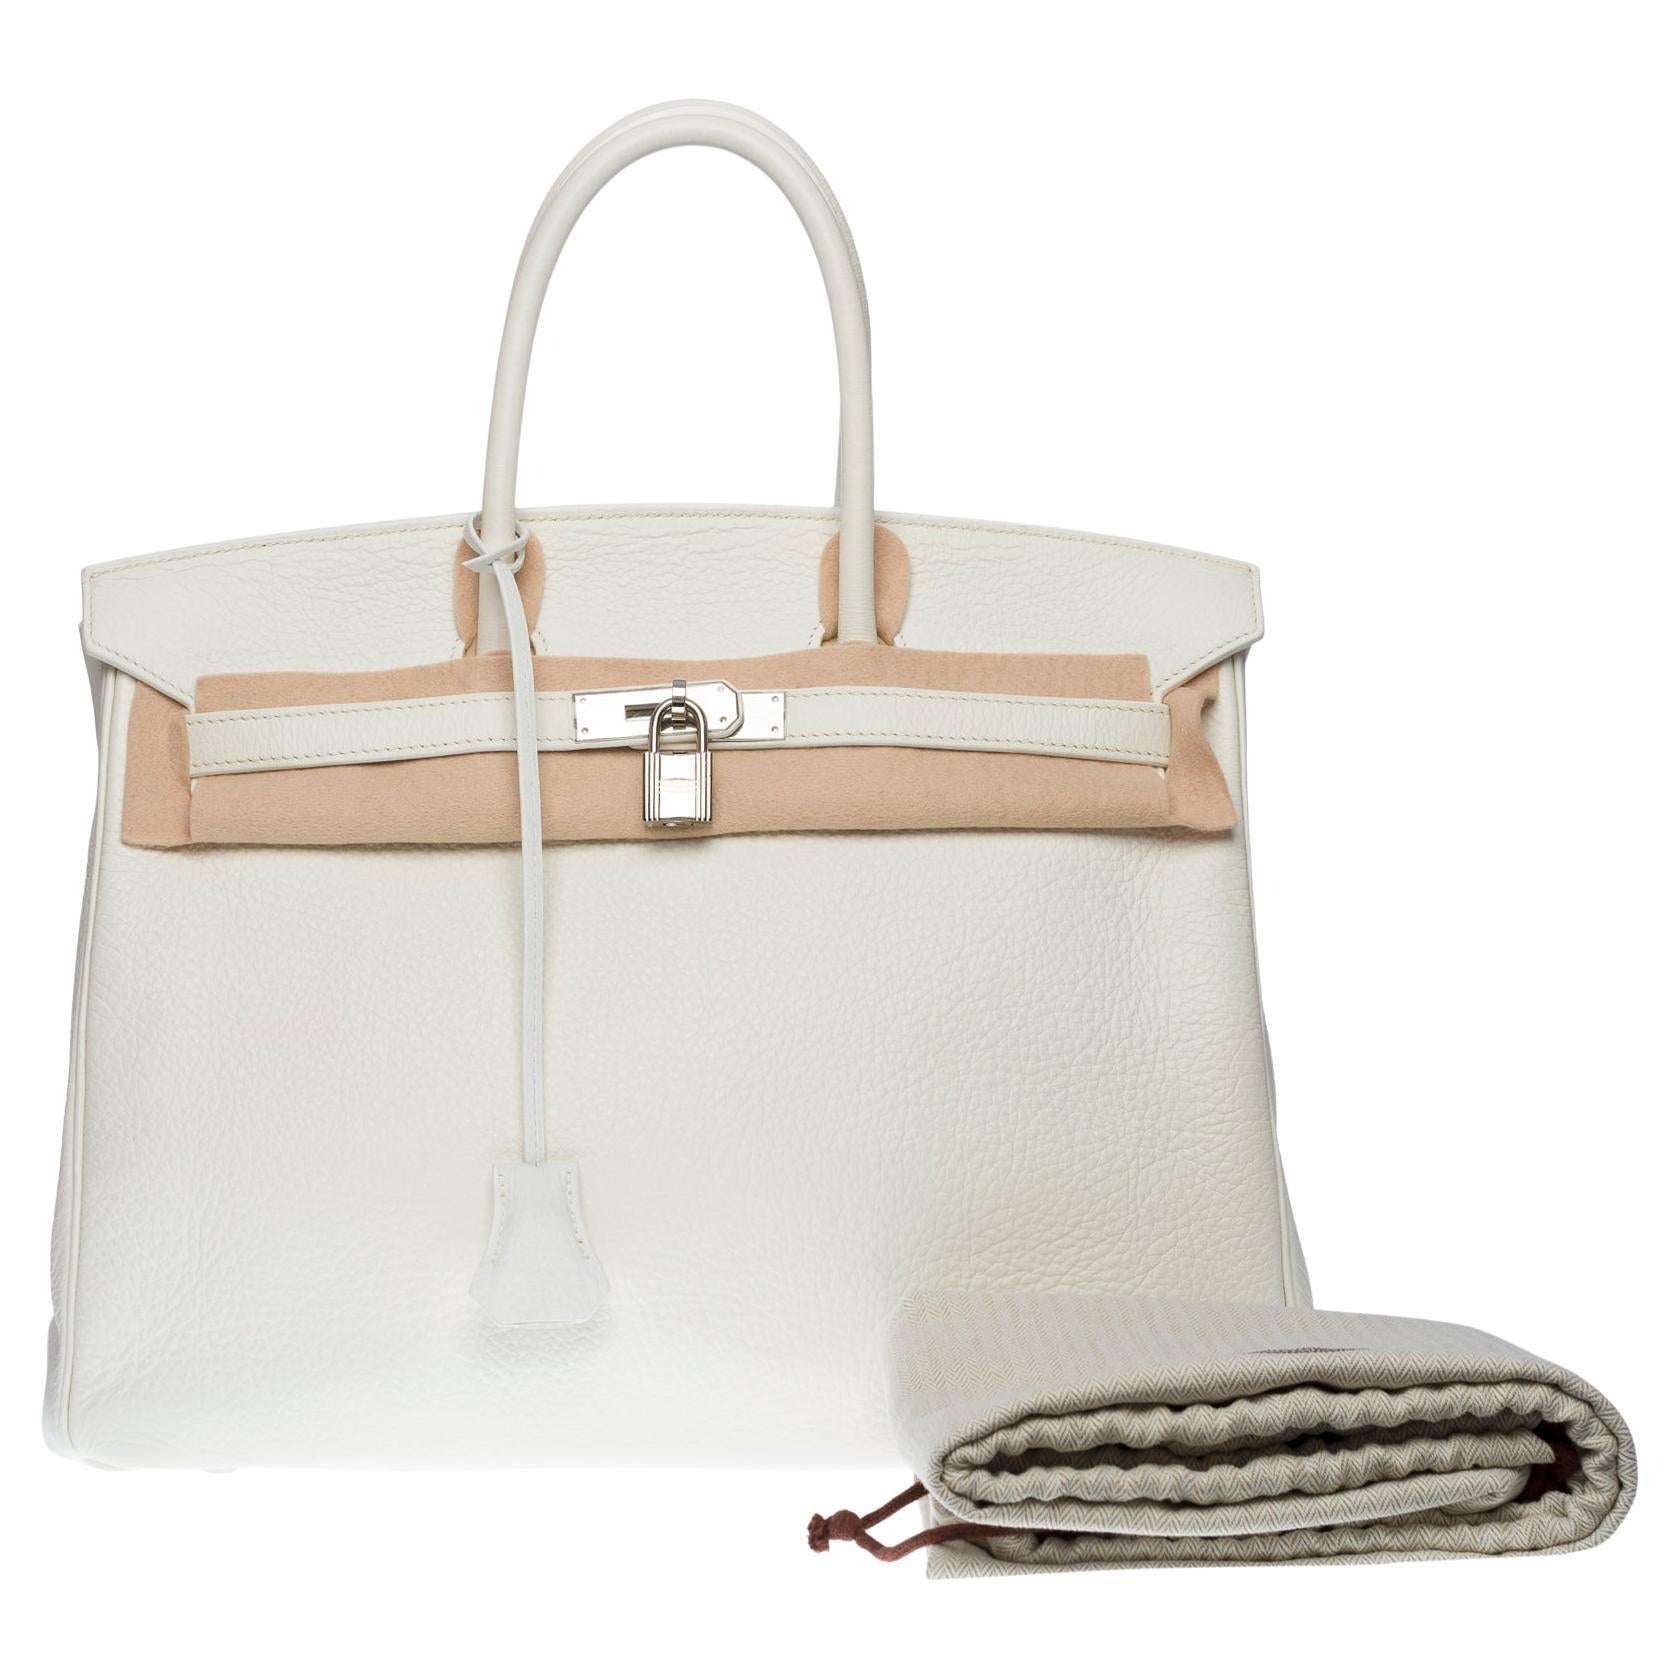 Stunning Hermès Birkin 35 handbag in white Togo leather, SHW